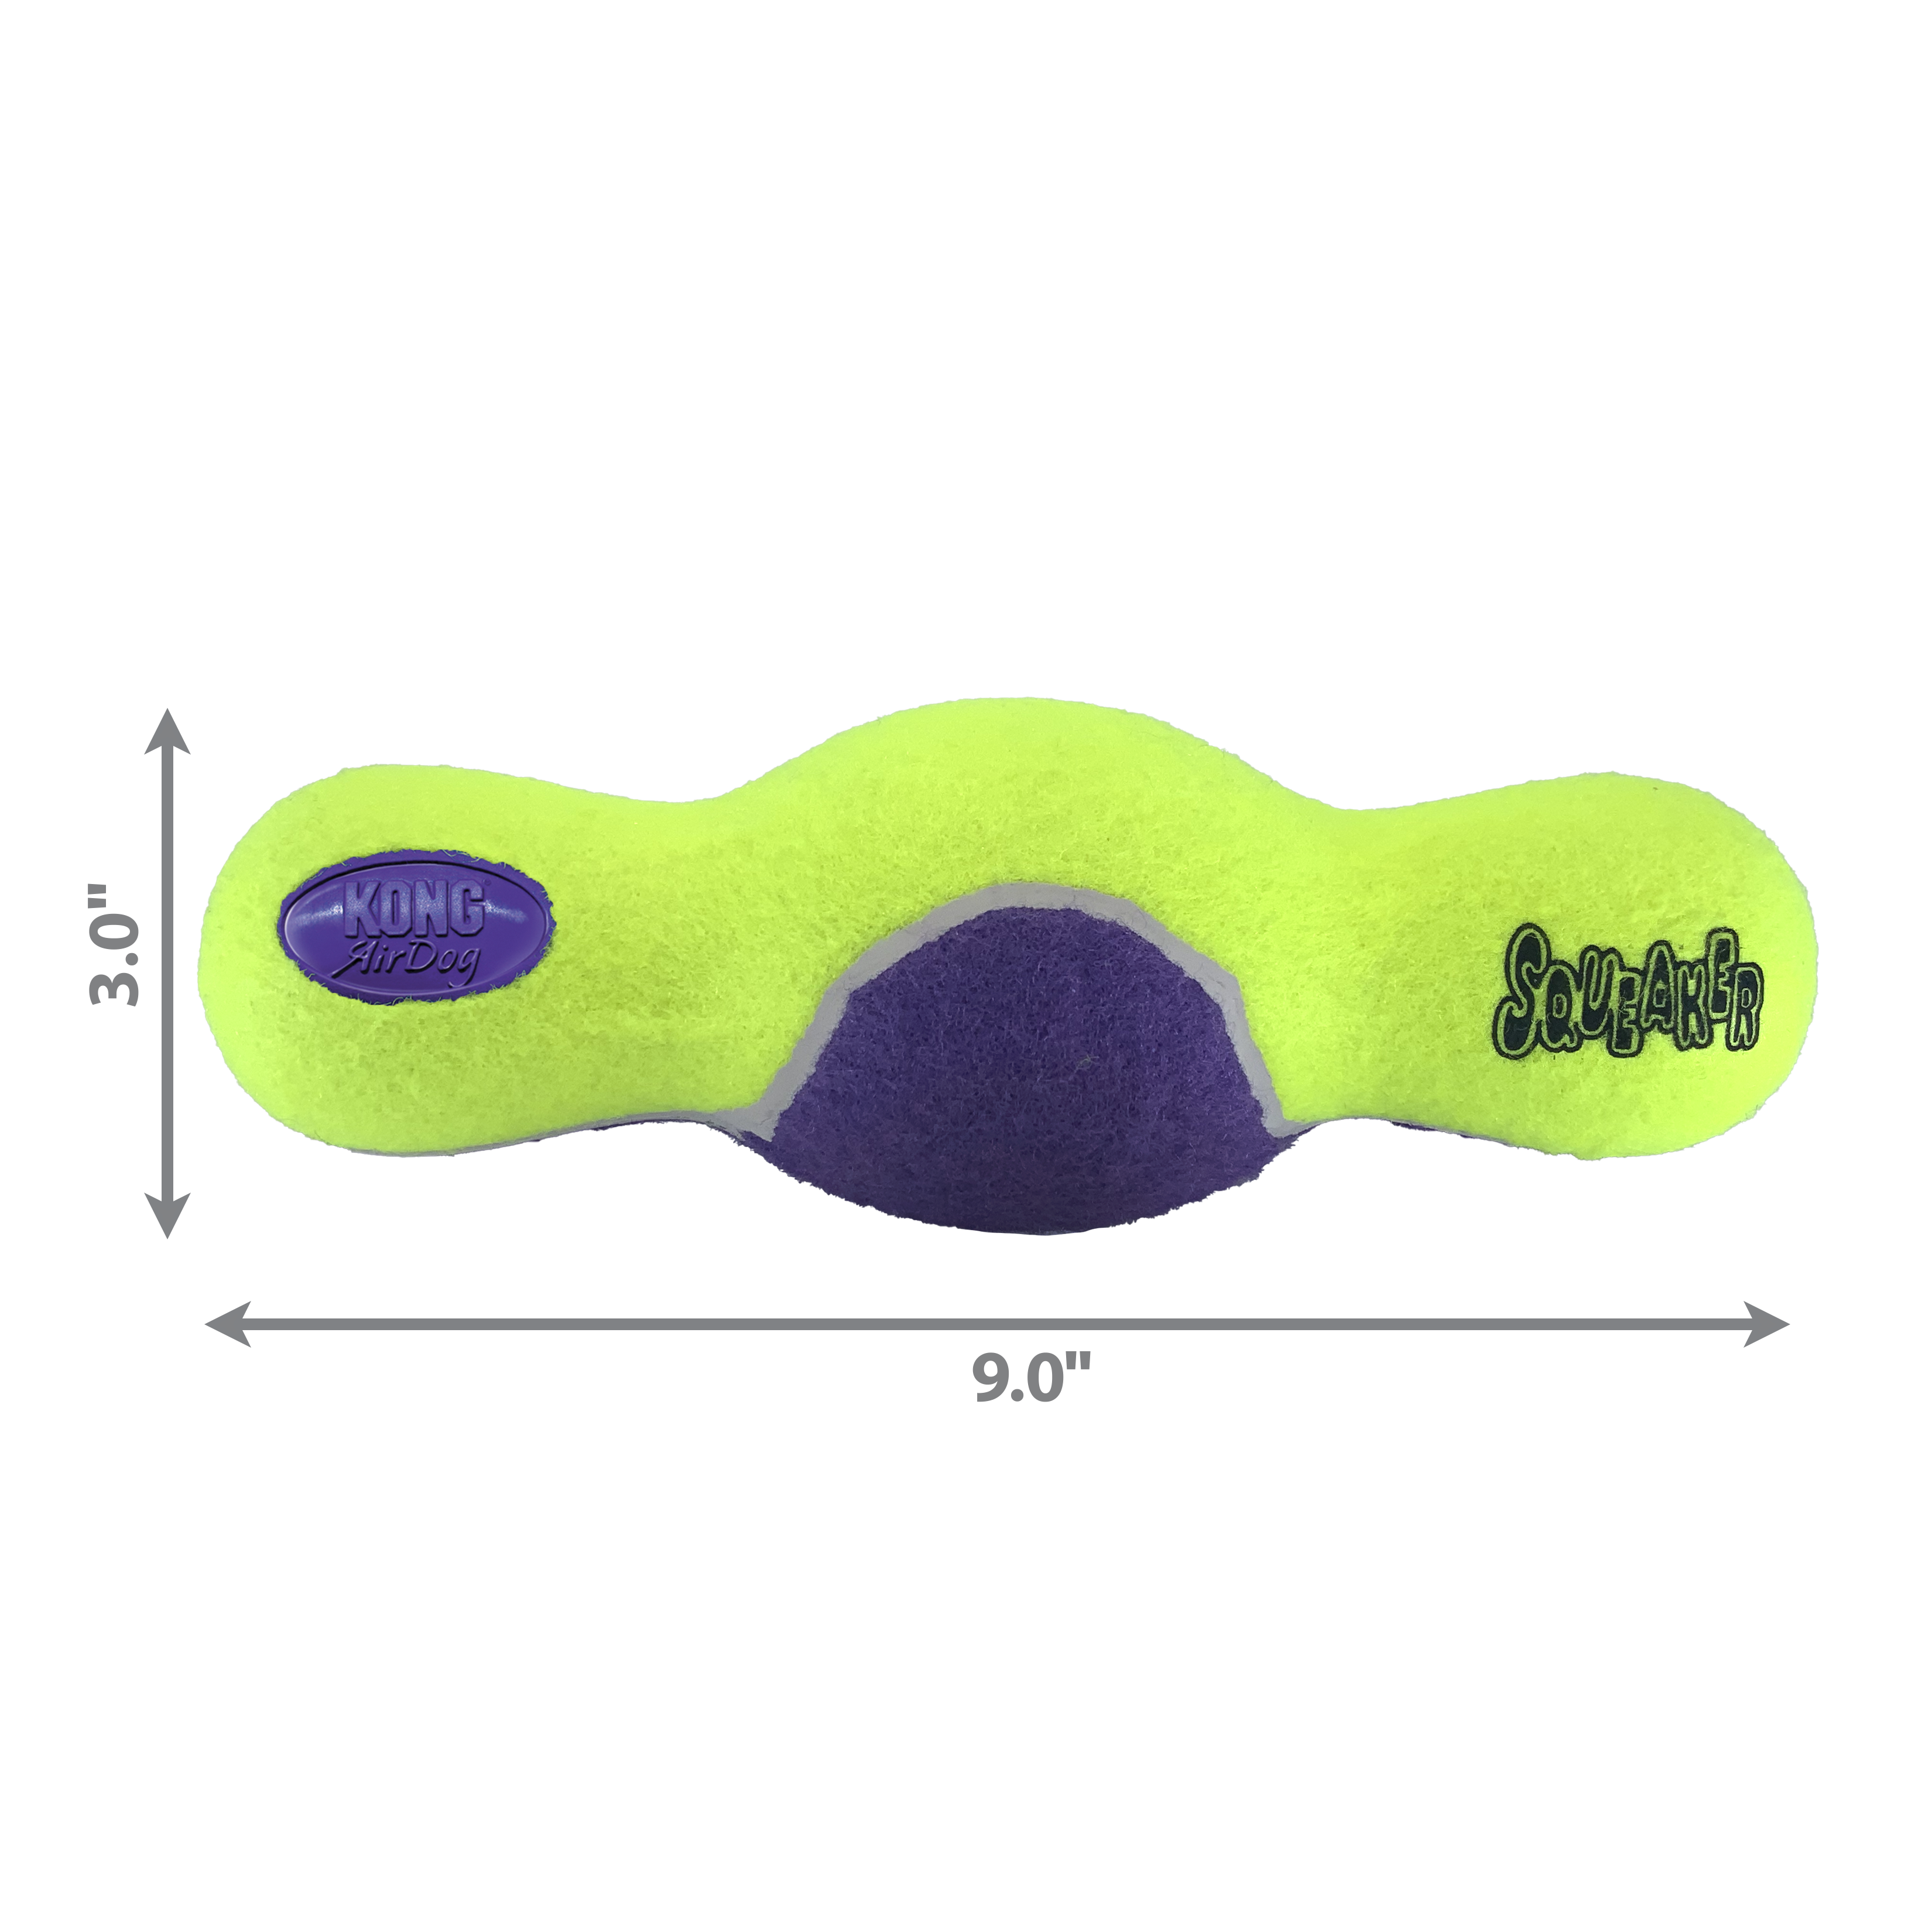 AirDog Squeaker Roller dimoffpack produktbillede